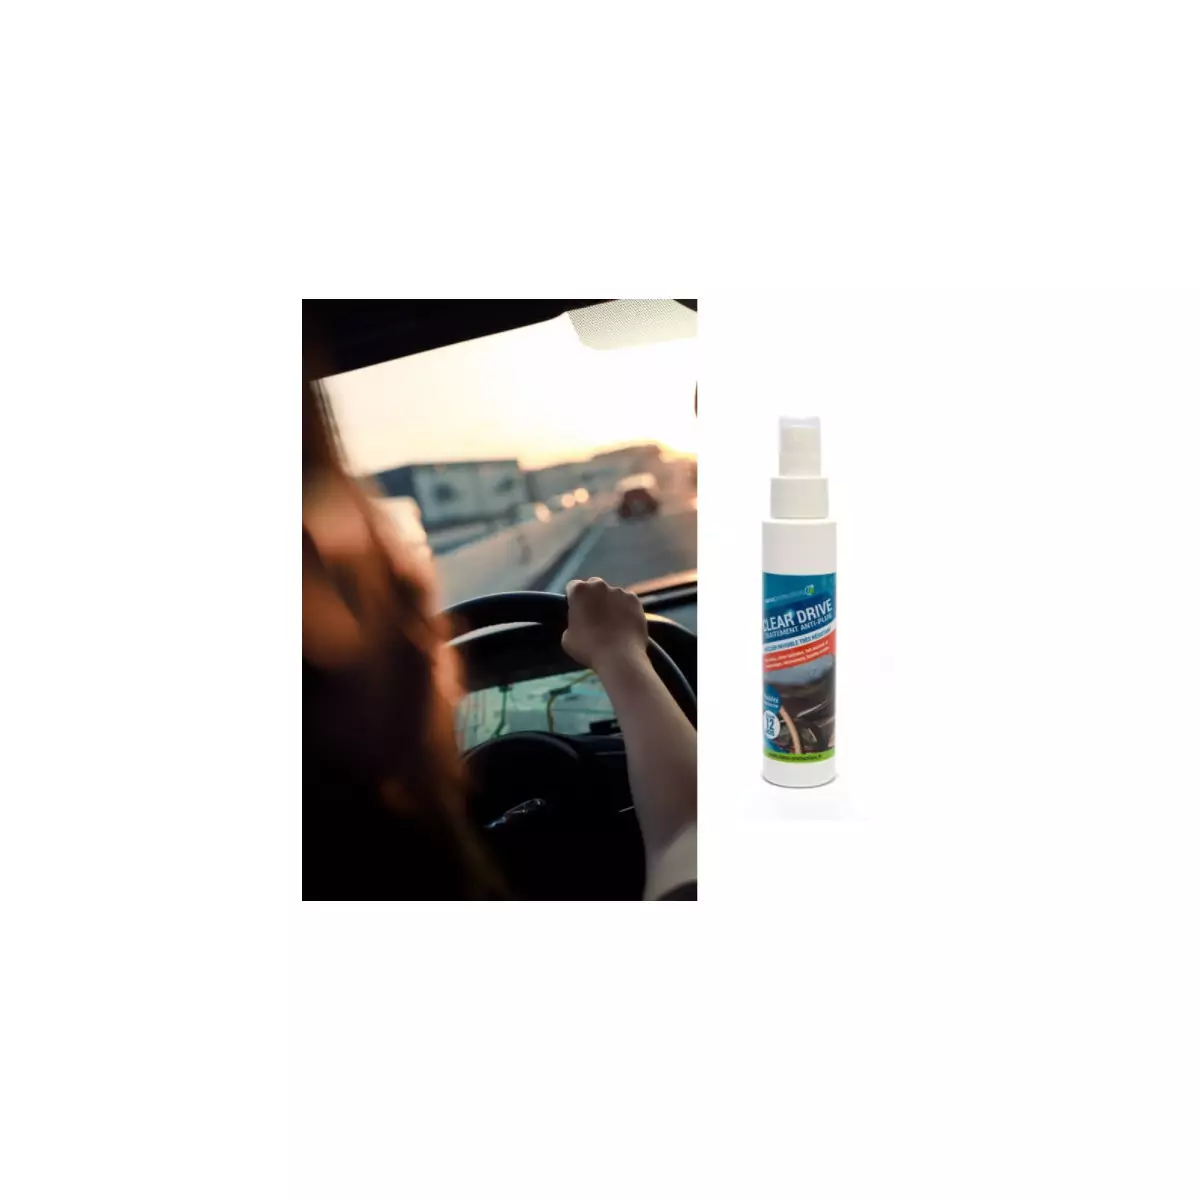 ANTIFREEZE - outil antigel pour la voiture - contre les vitres